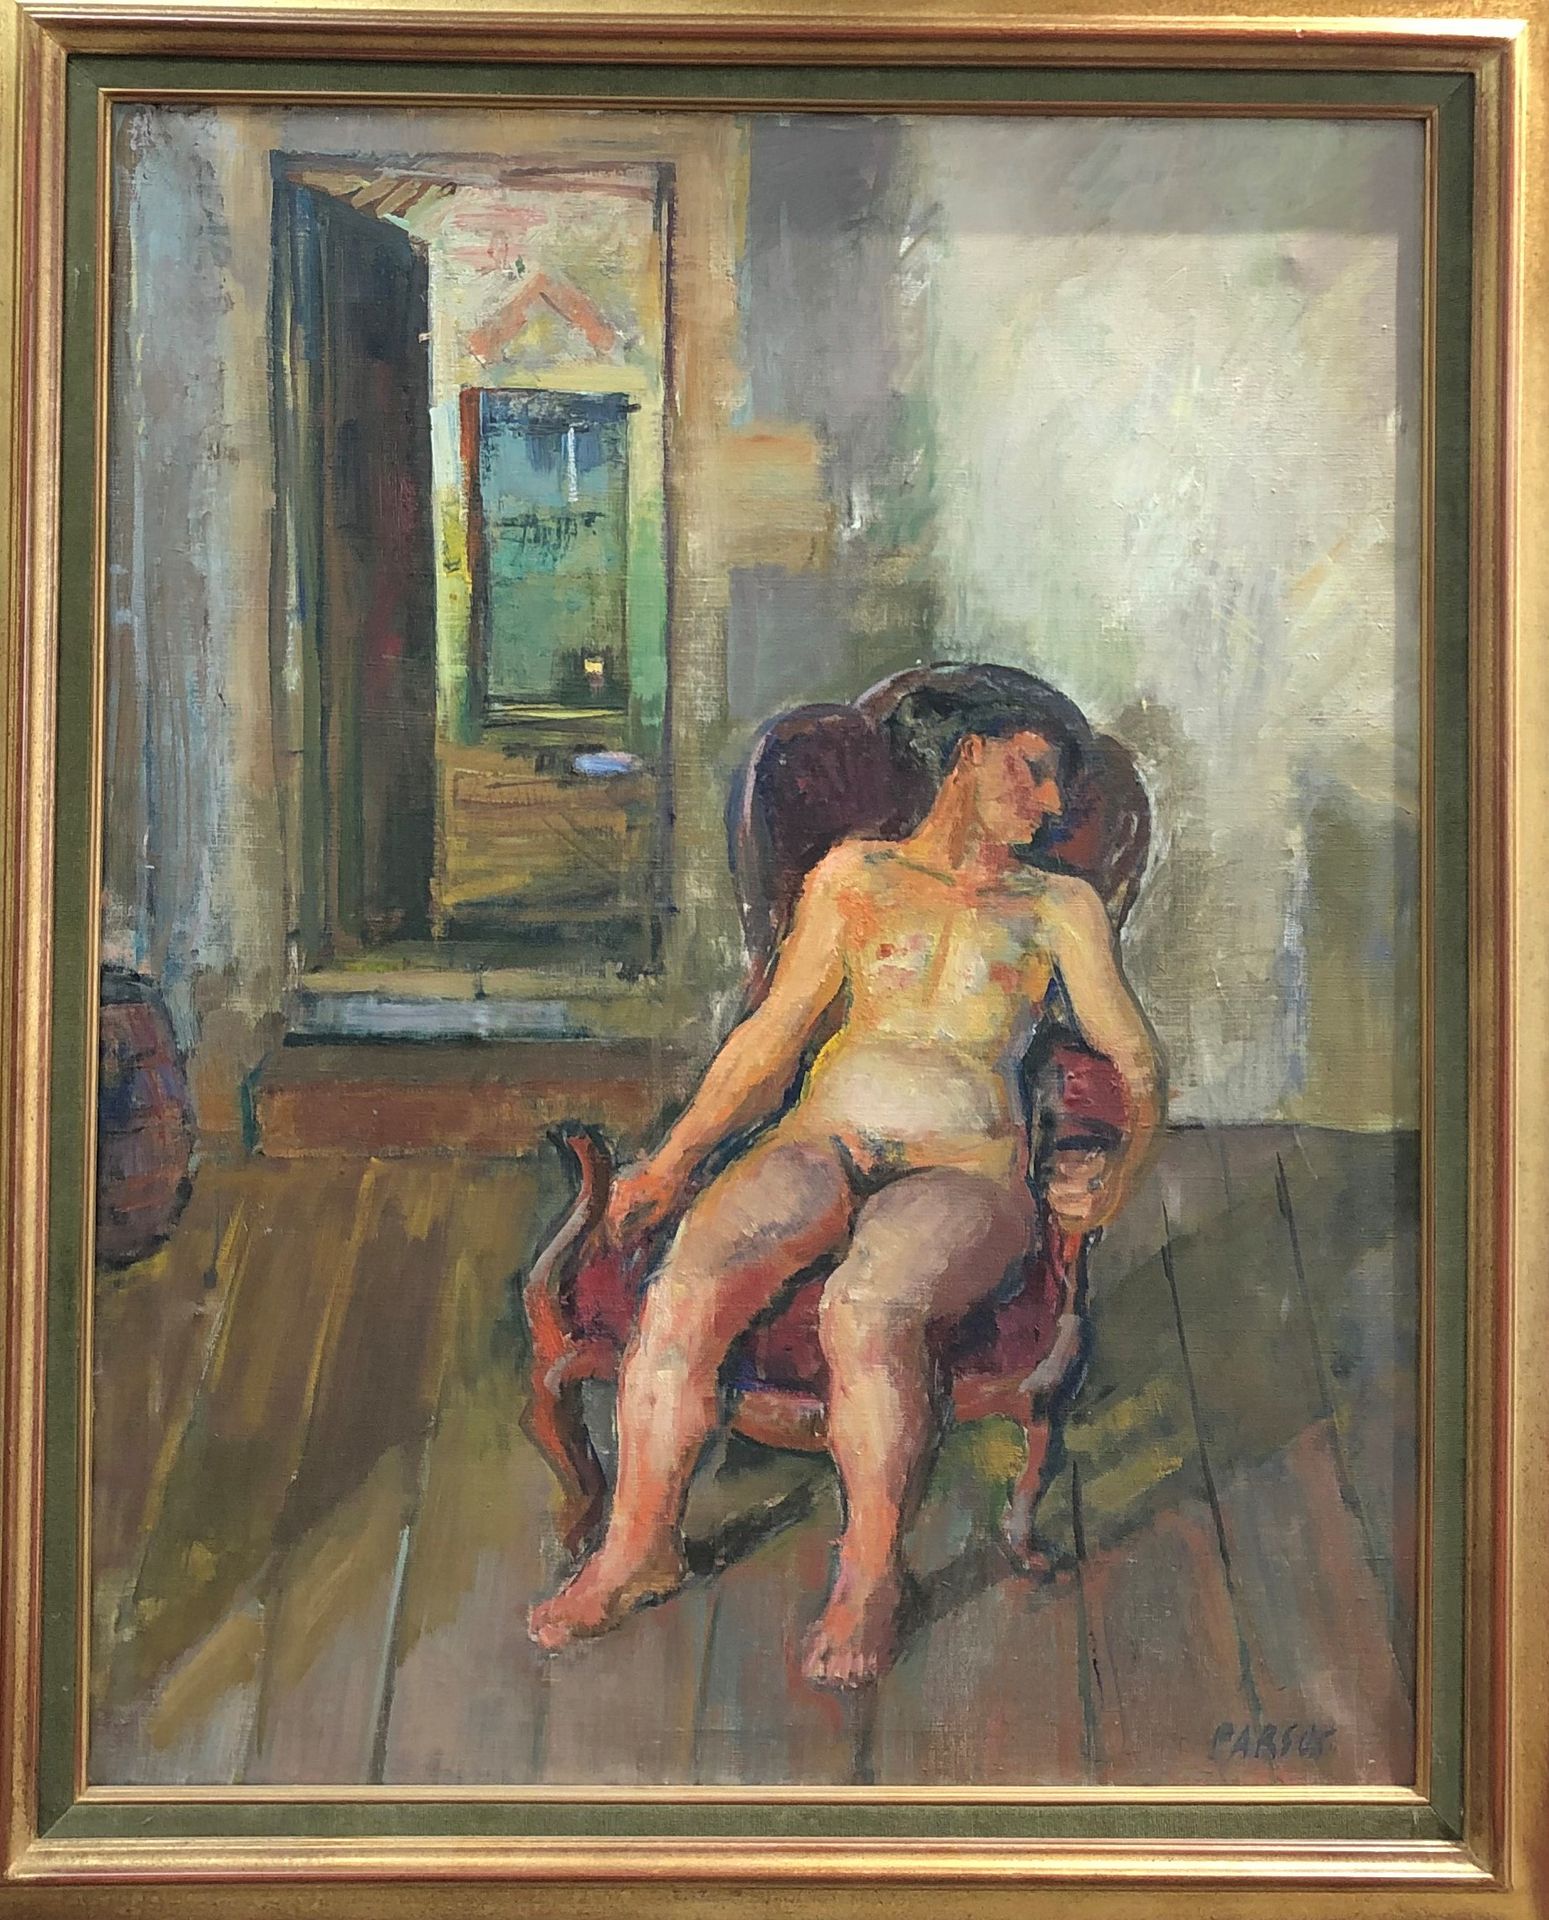 Null Pierre PARSUS (geboren im Jahr 1921)

Nackt in einem Sessel sitzend 

Öl au&hellip;